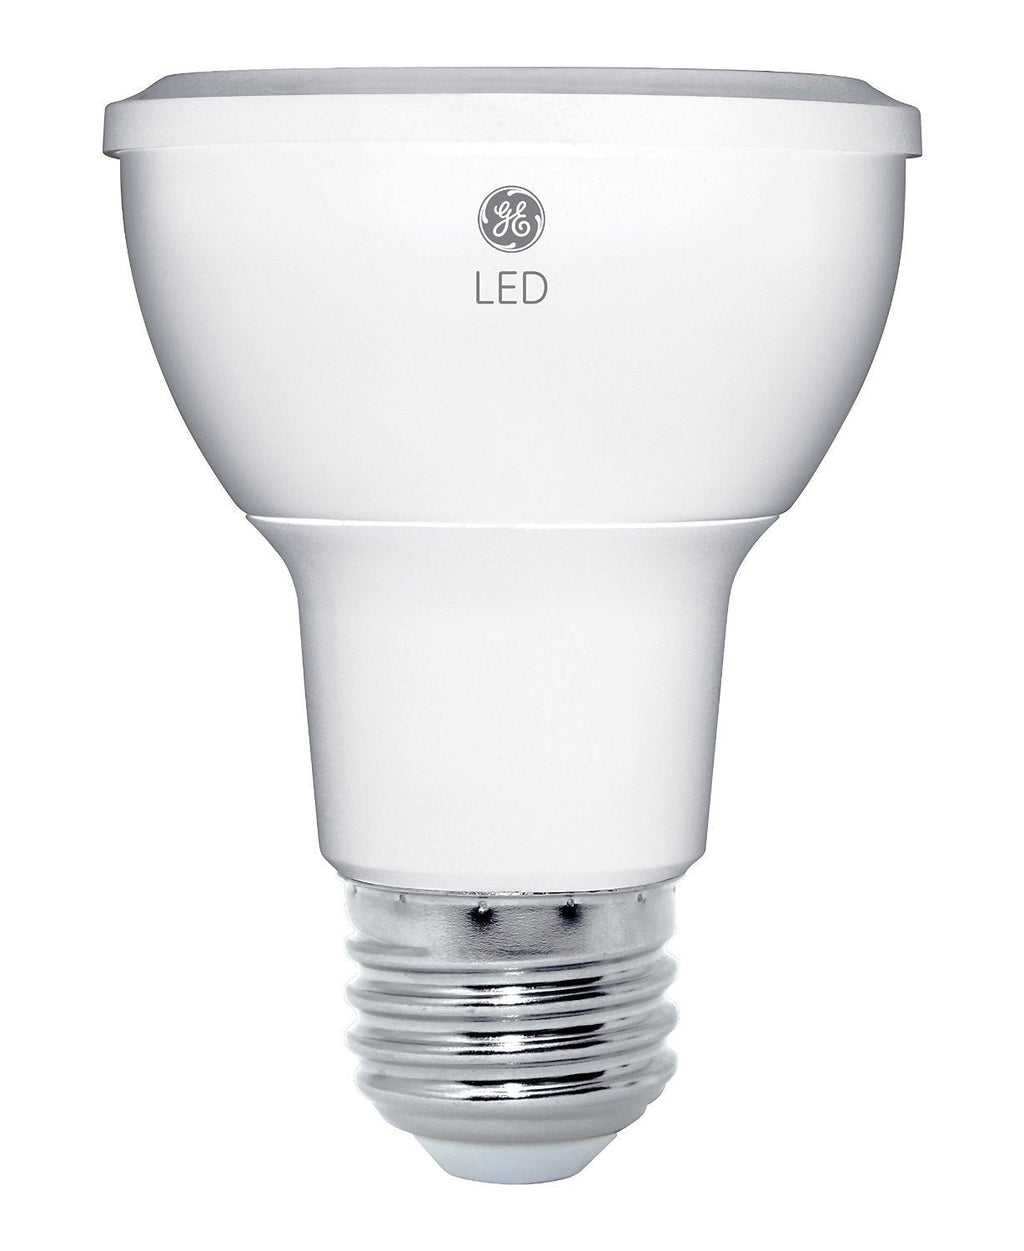 GE Lighting 33851 Energy-Smart LED 7-watt, 470-Lumen R20 Bulb with Medium Base, Soft White, 1-Pack 1 Pack